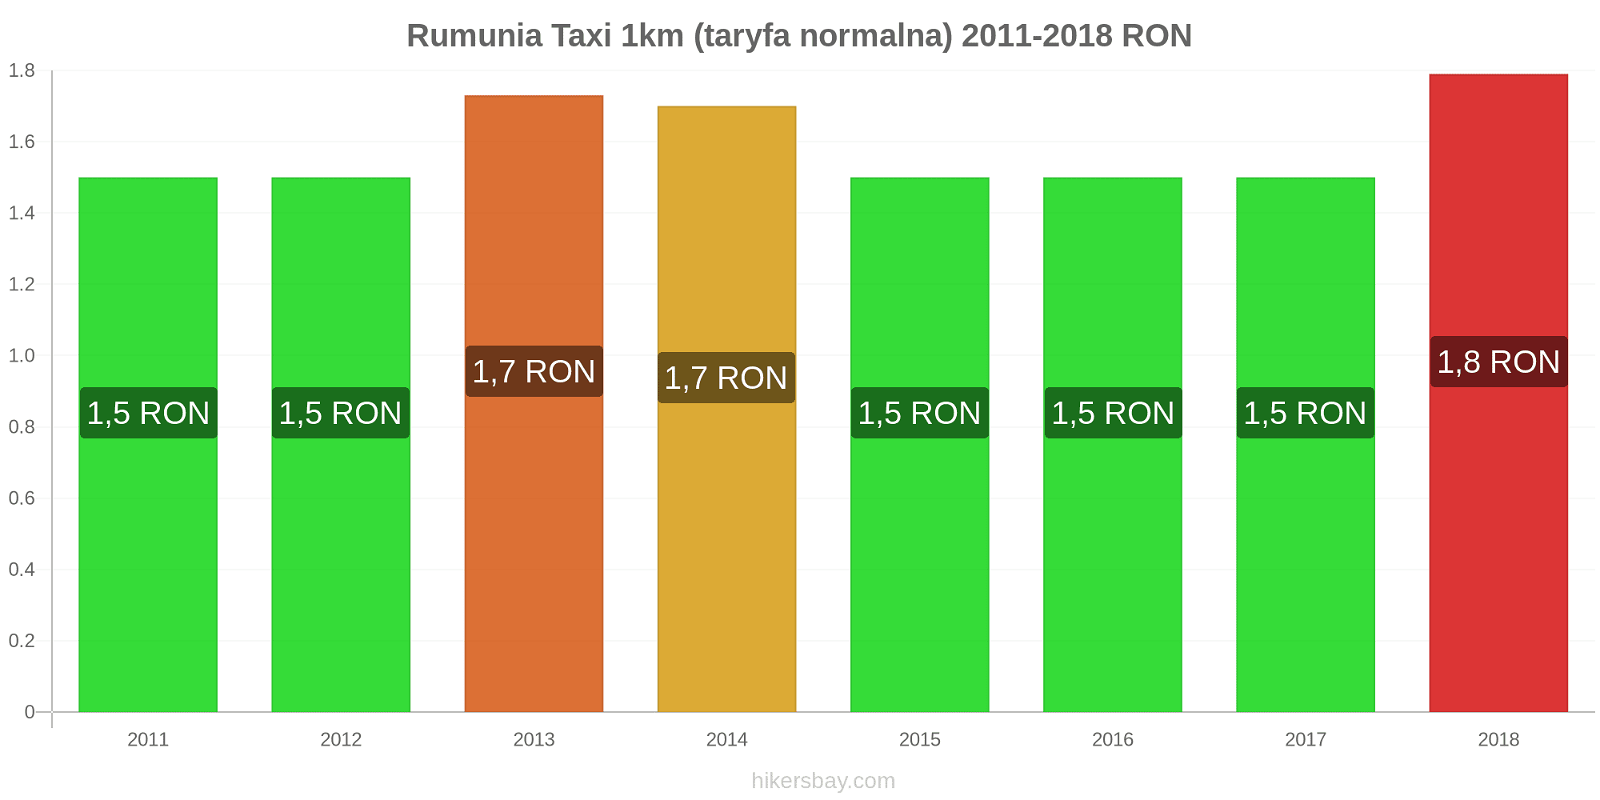 Rumunia zmiany cen Taxi 1km (taryfa normalna) hikersbay.com